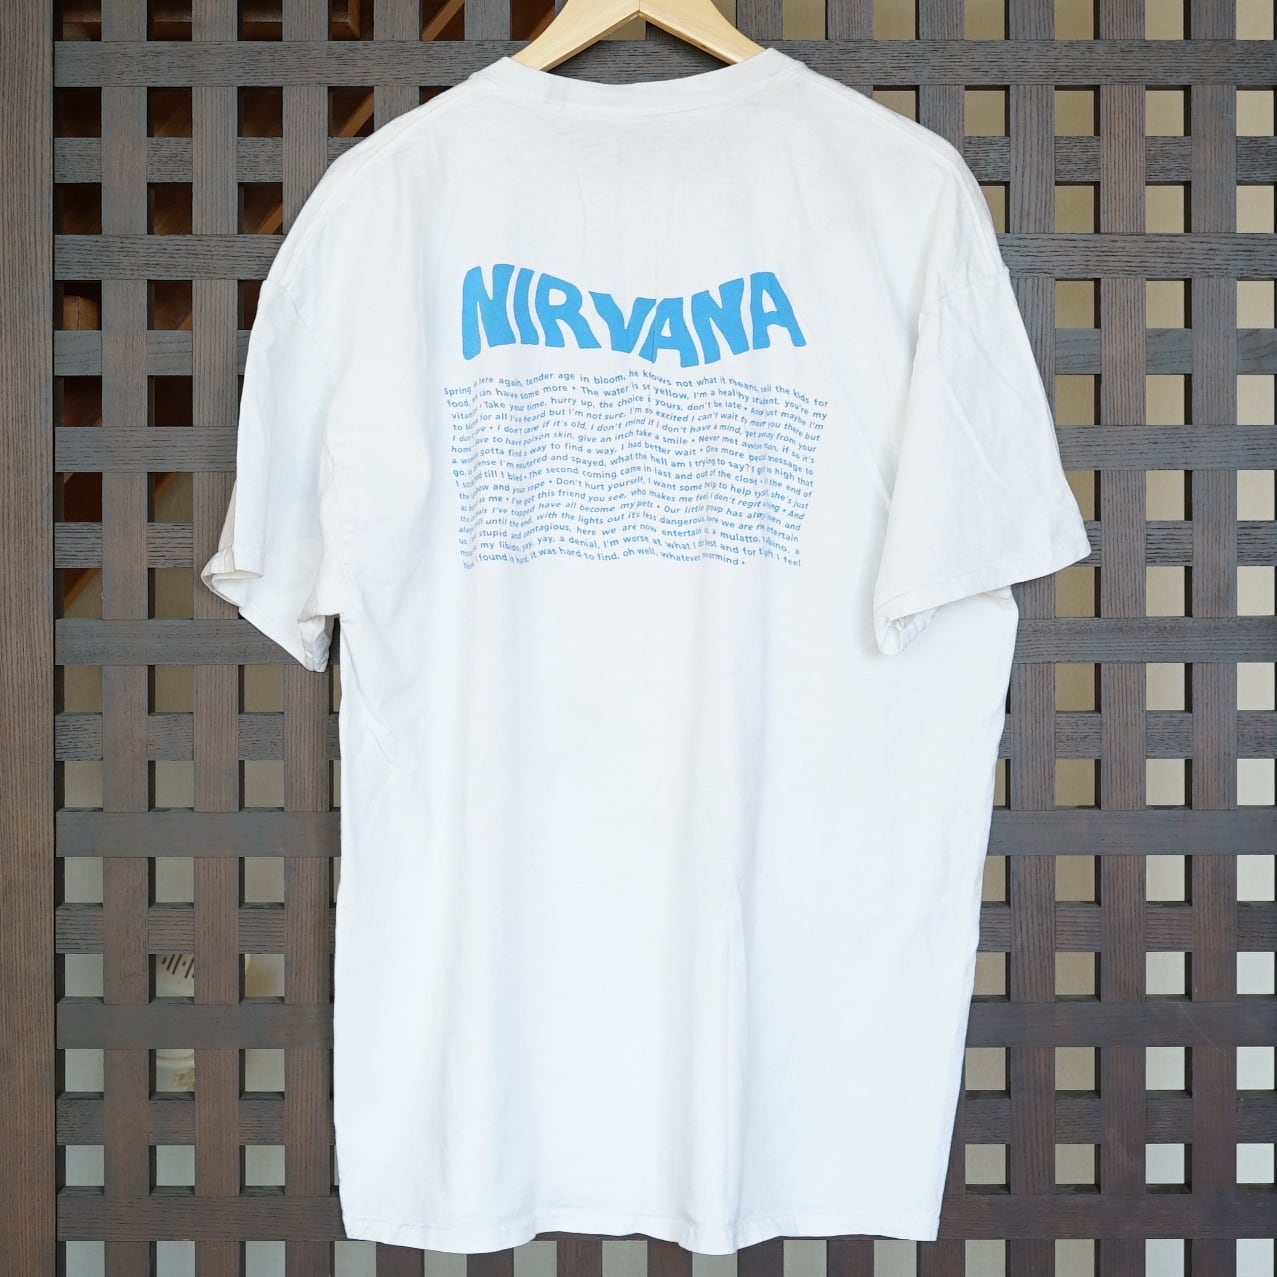 90 Nirvana long t-shirts